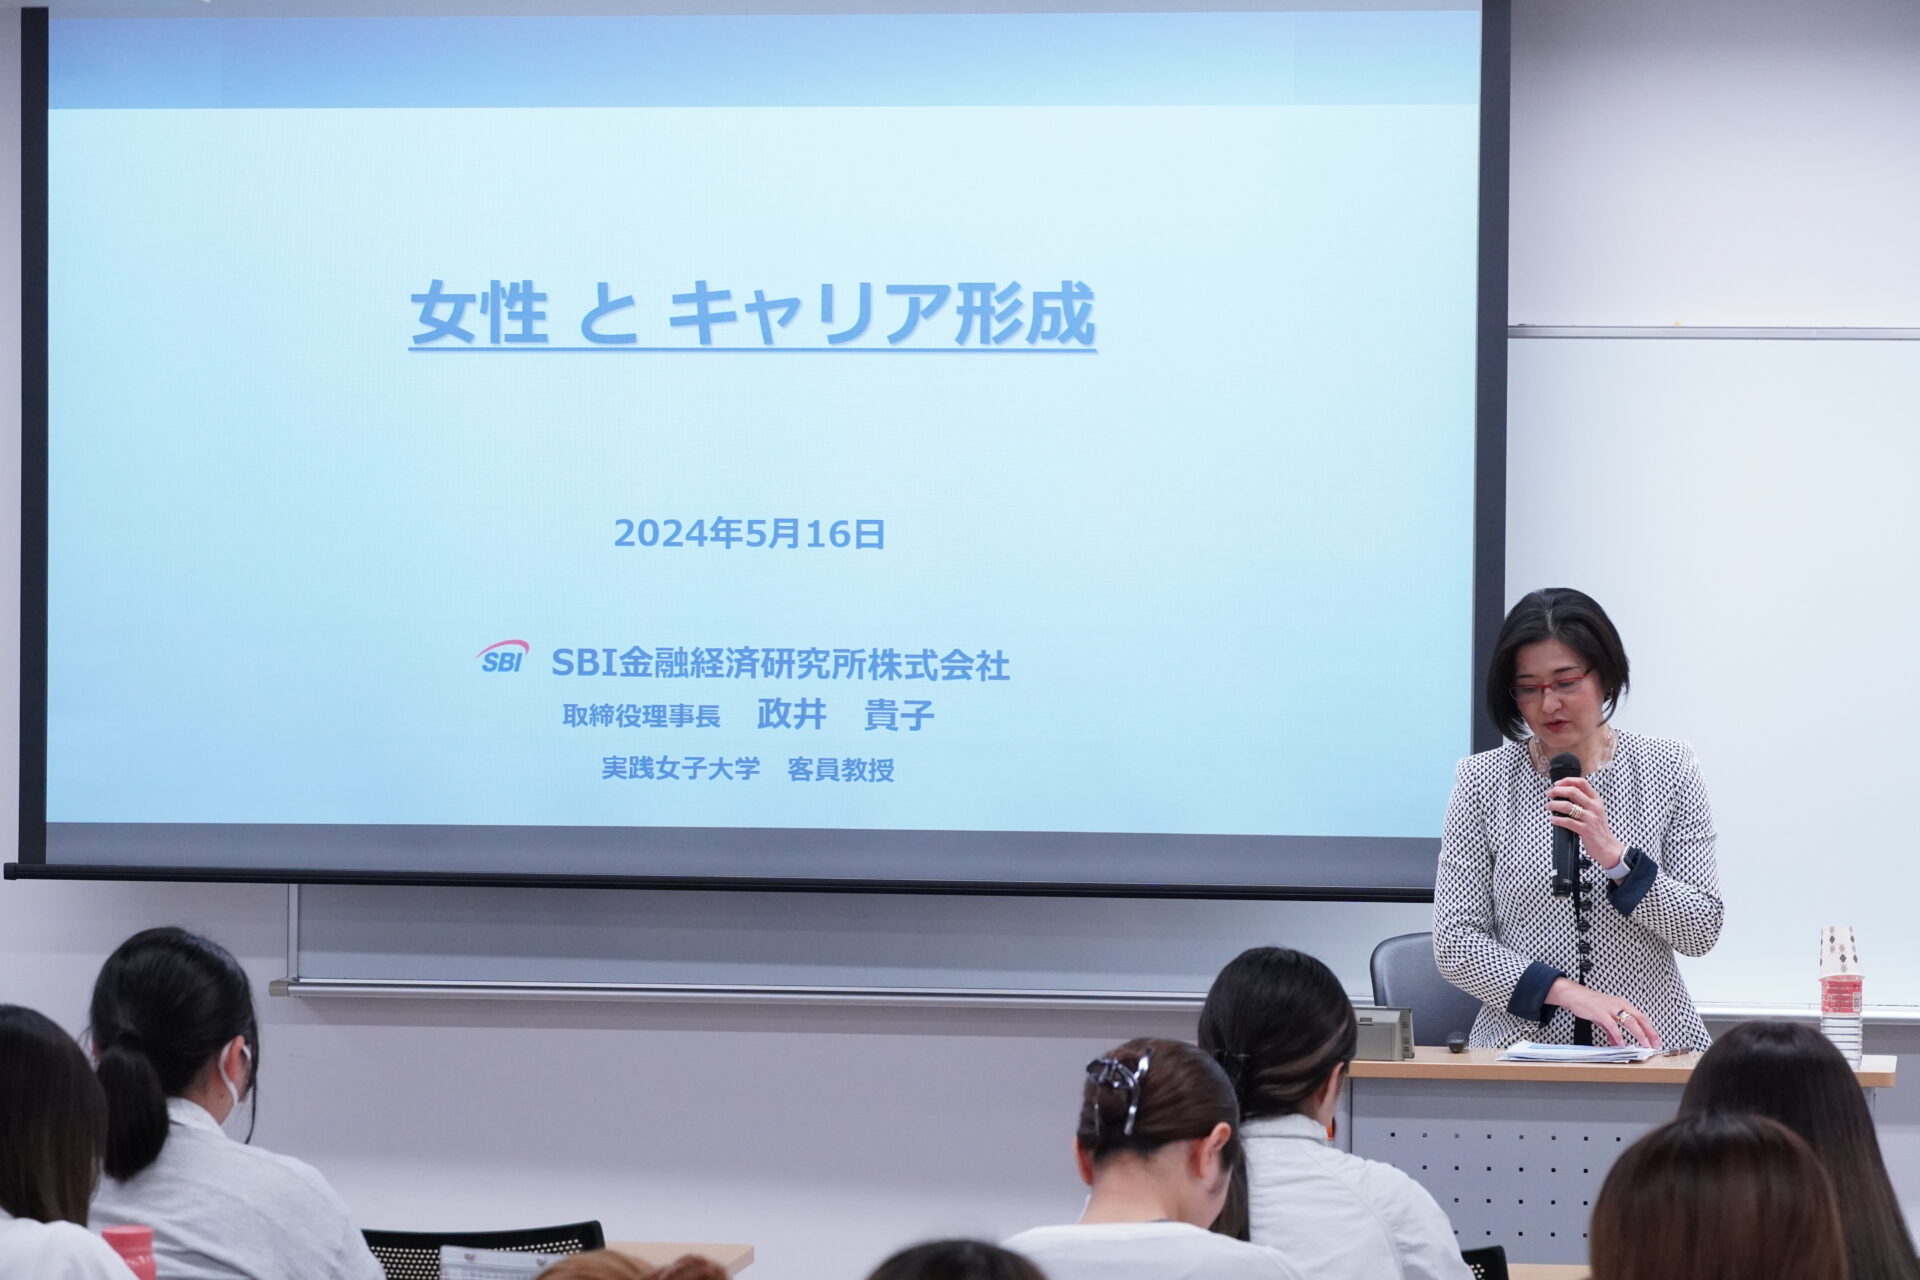 誇りを持ってキャリアを積み重ねる。「女性とキャリア形成」の授業で元日本銀行審議委員の政井貴子氏が講演を行いました。